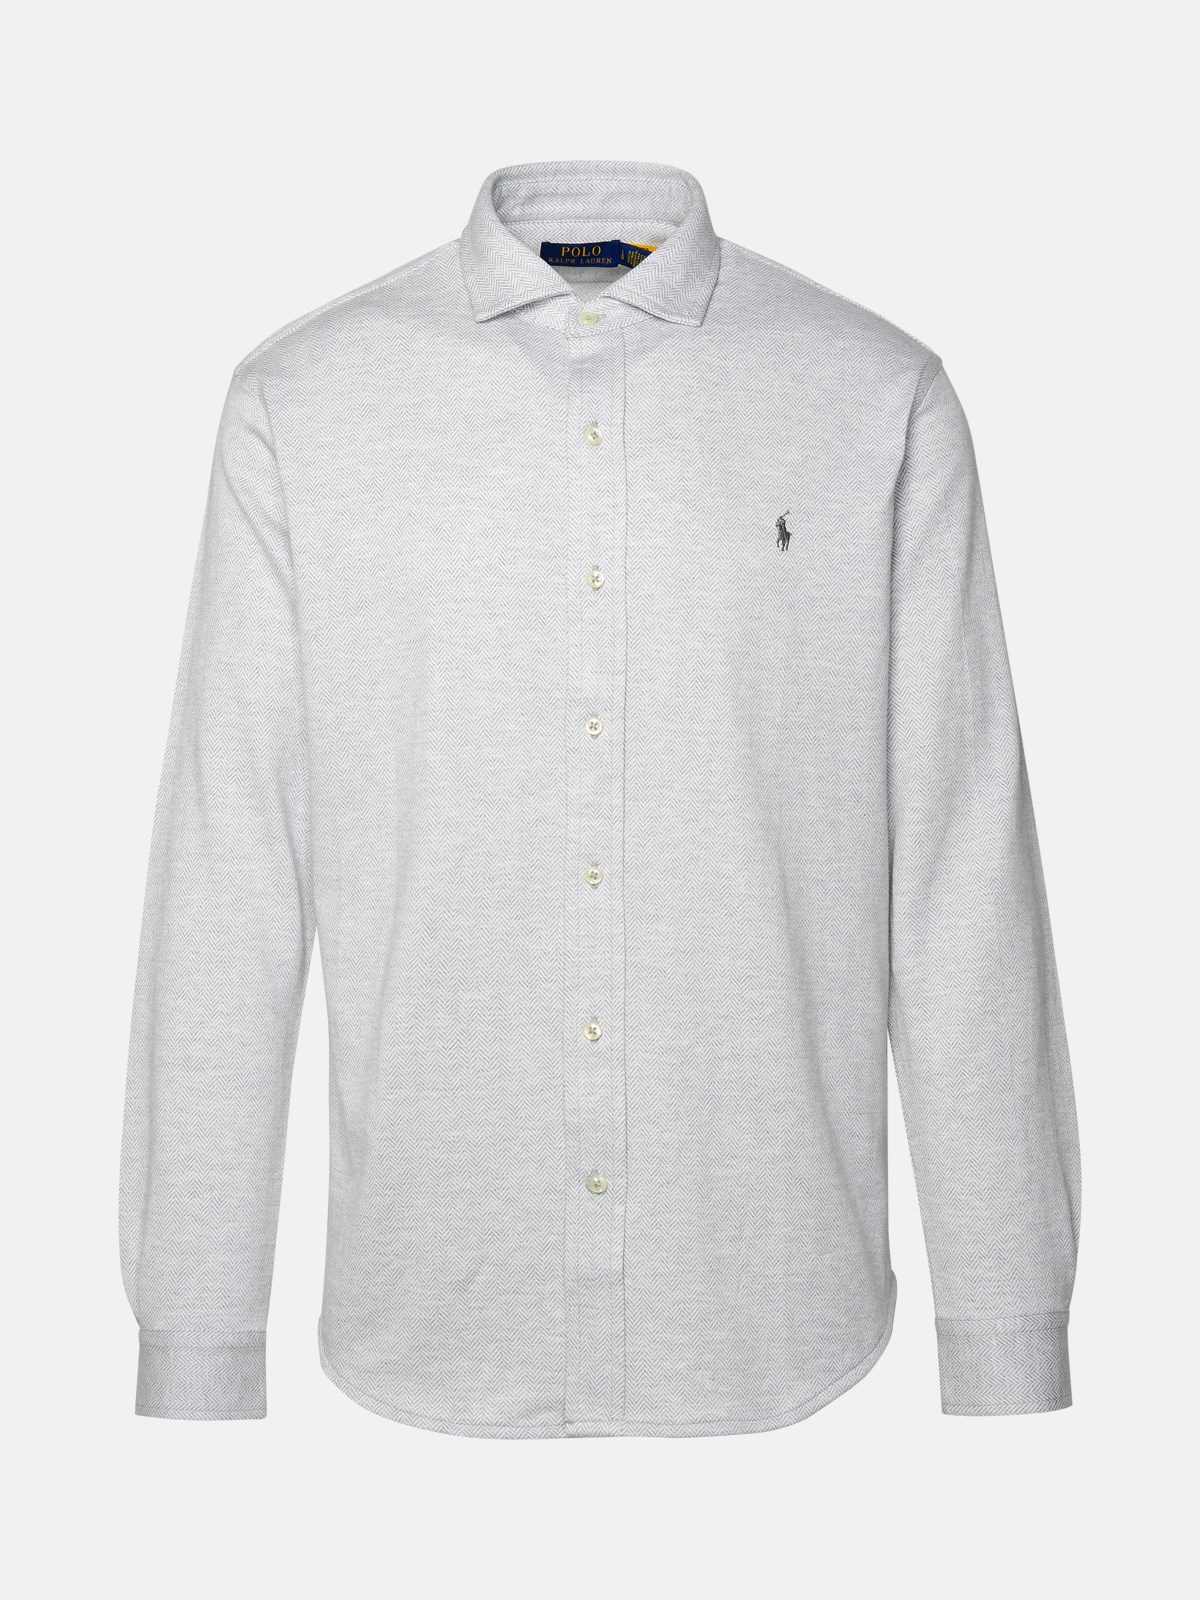 Polo Ralph Lauren Grey Cotton Shirt